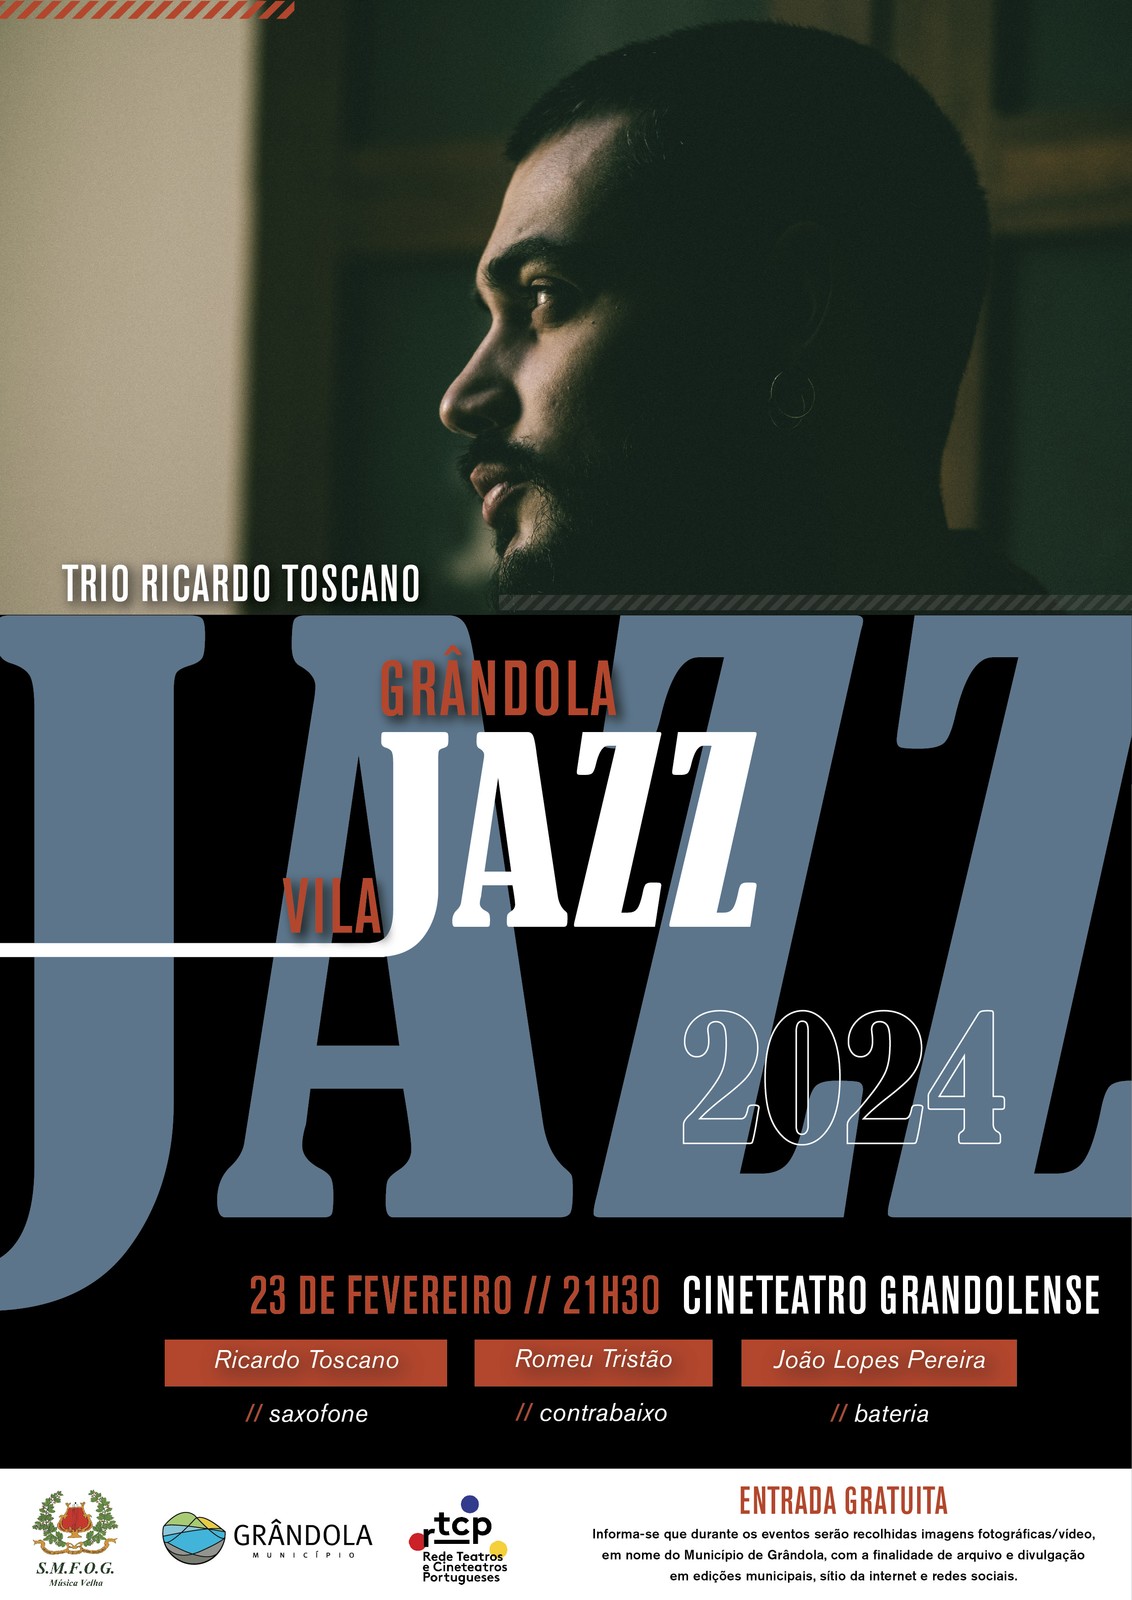 Grândola, Vila Jazz | Trio Ricardo Toscano